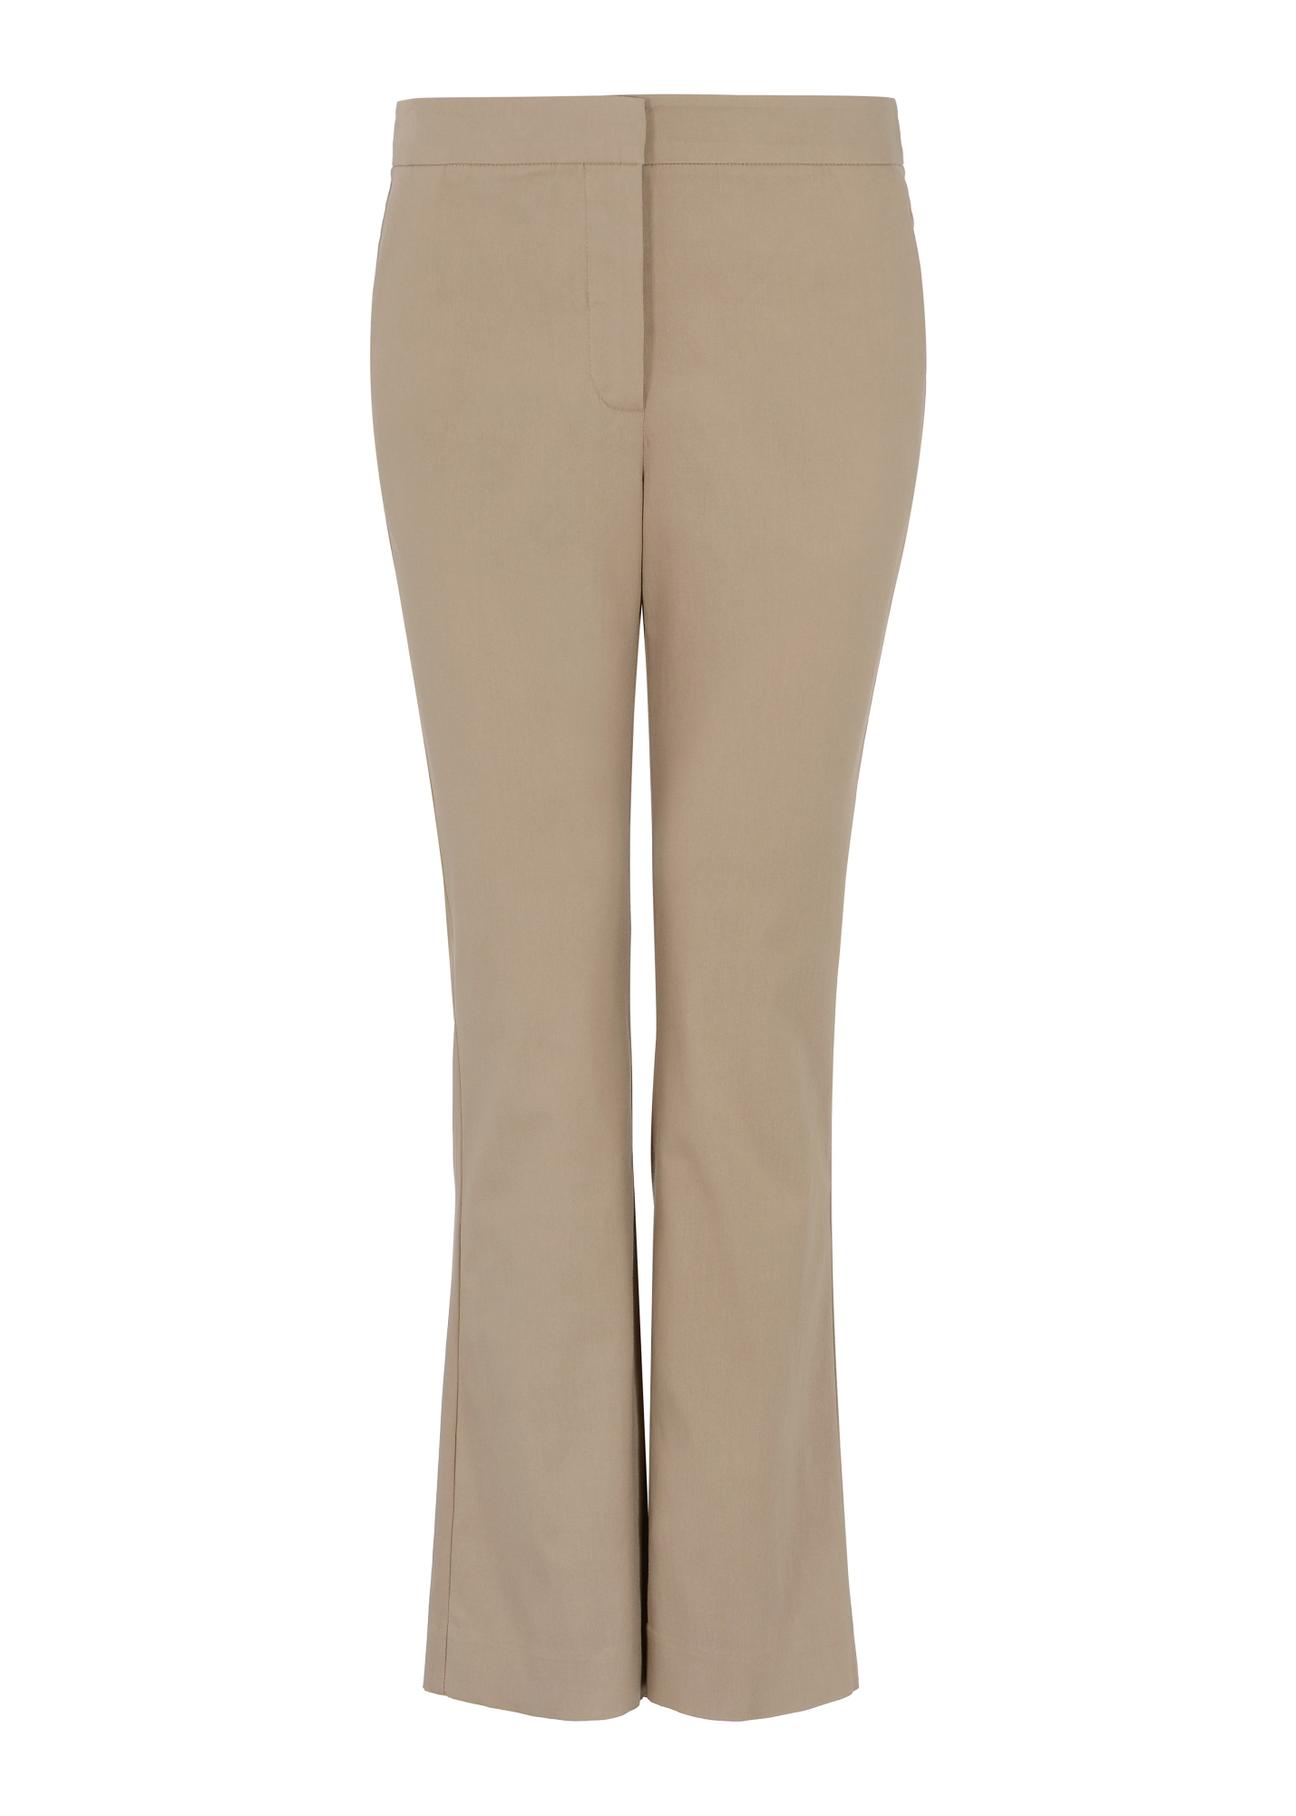 Beżowe spodnie damskie SPODT-0079-24(W23)